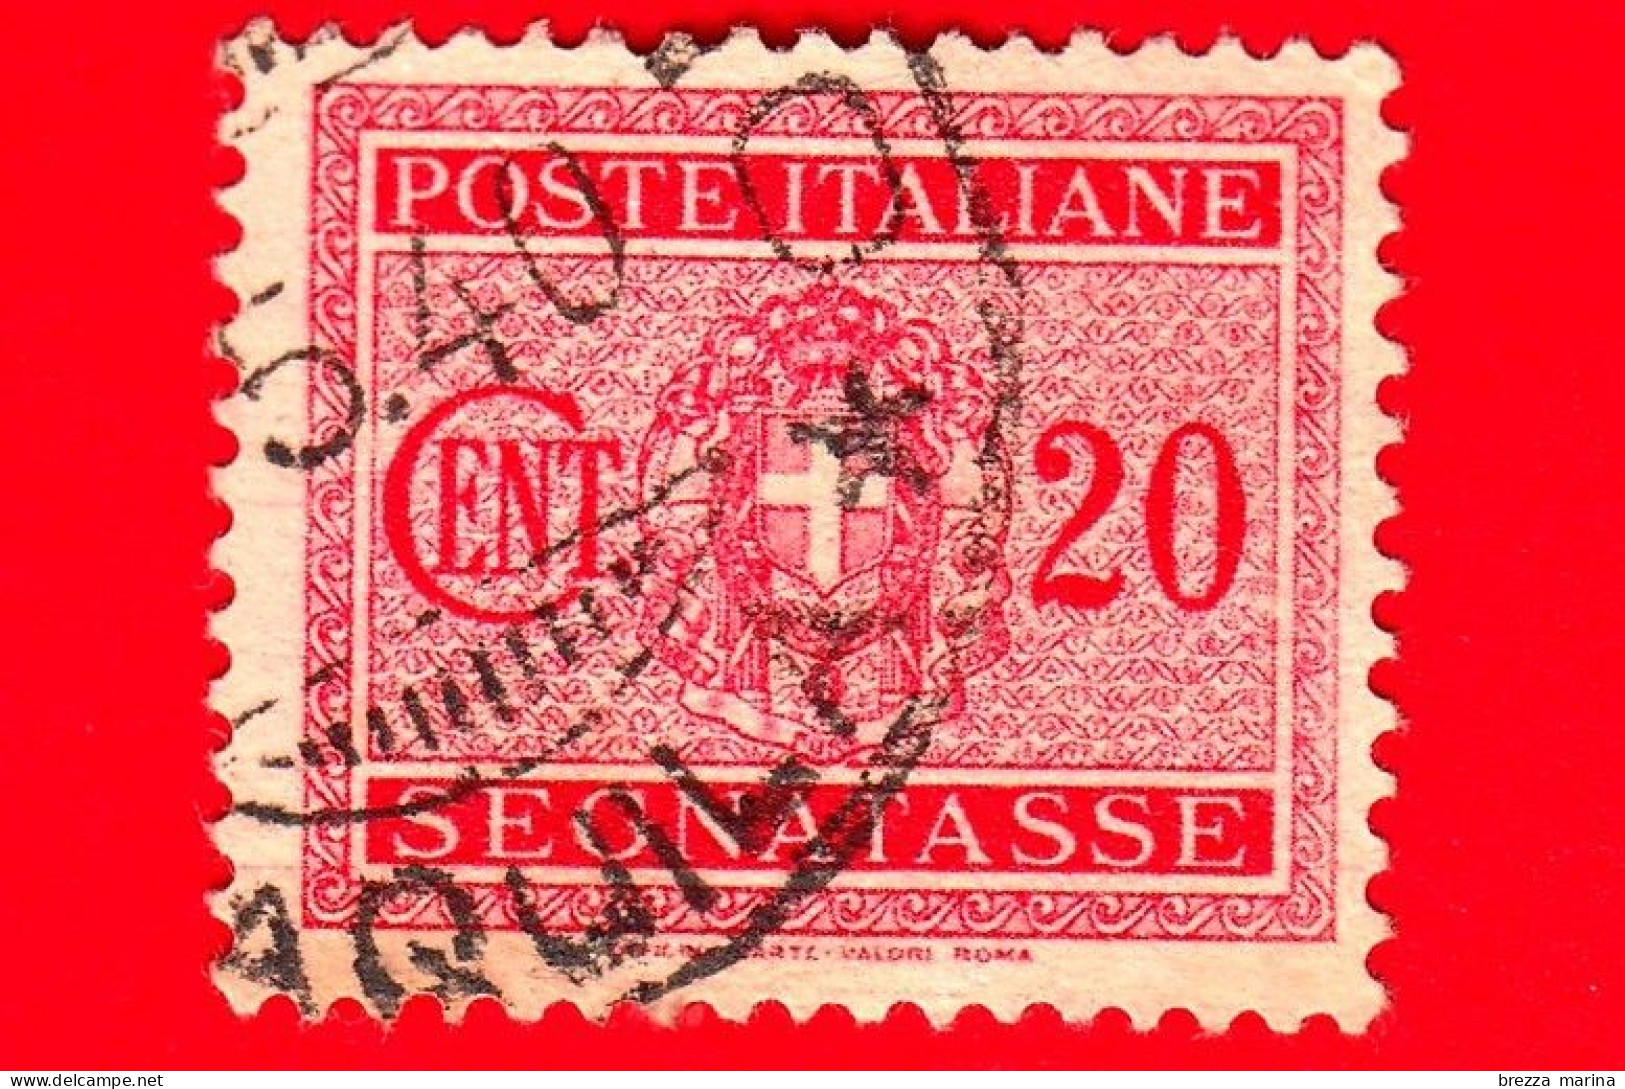 ITALIA - Usato - 1934 - Segnatasse - Fascio Littorio - 20 C - Postage Due